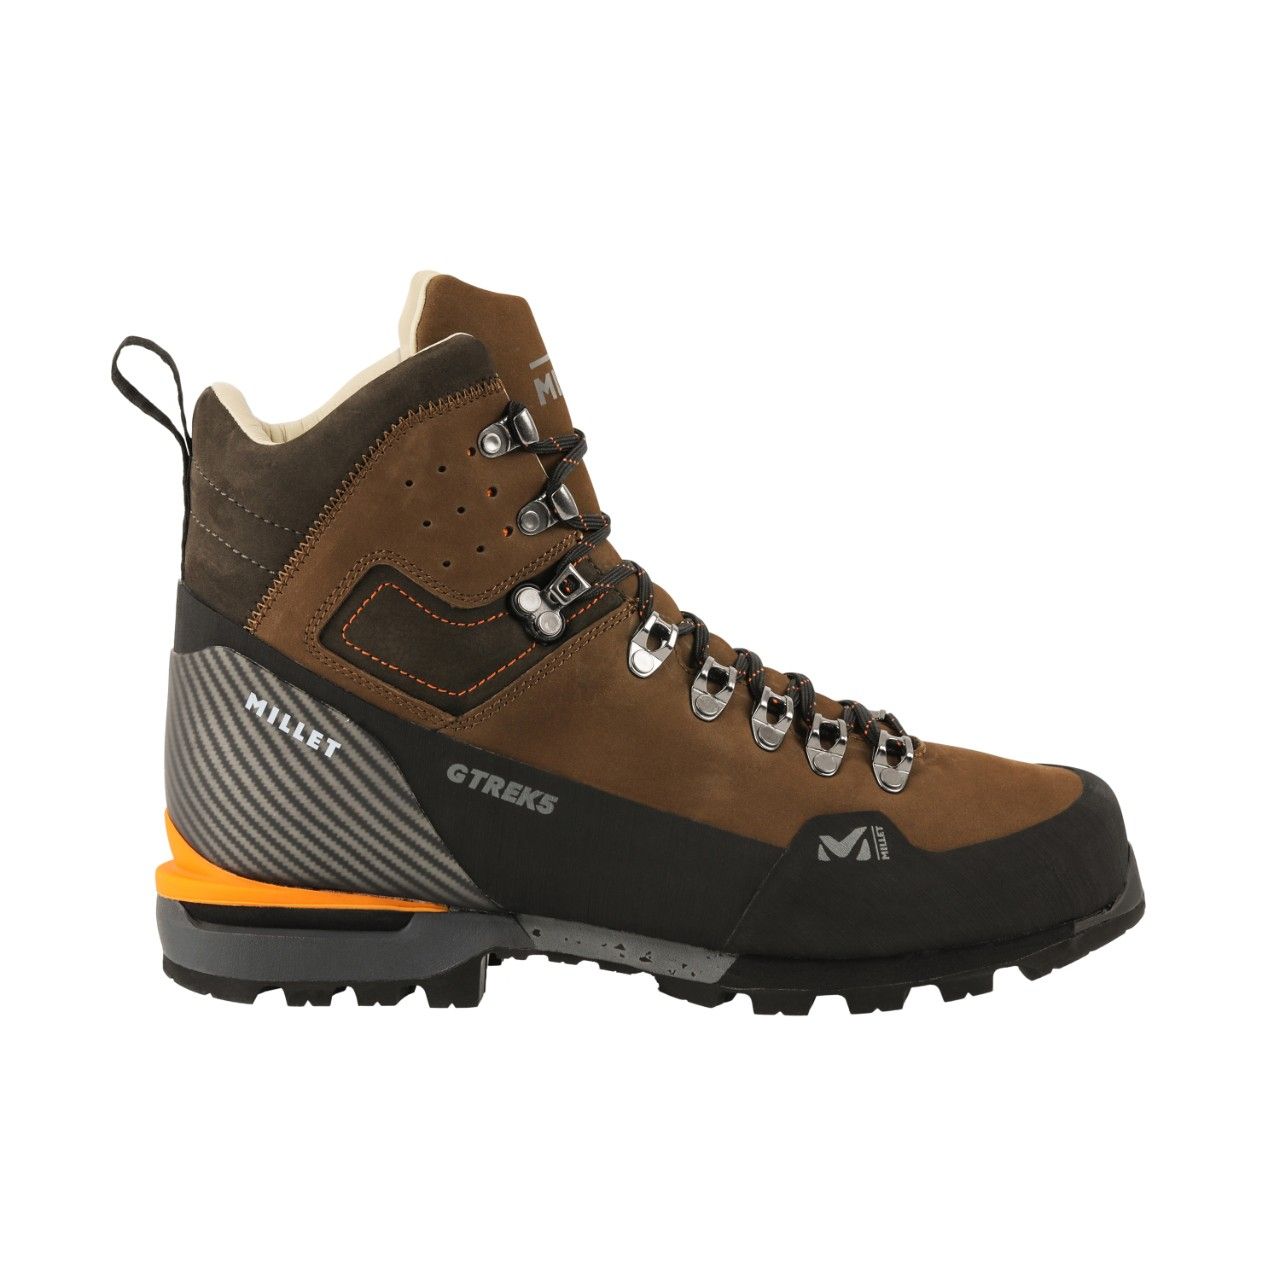 Chaussure de randonnée G Trek 5 Leather - Leather Brown